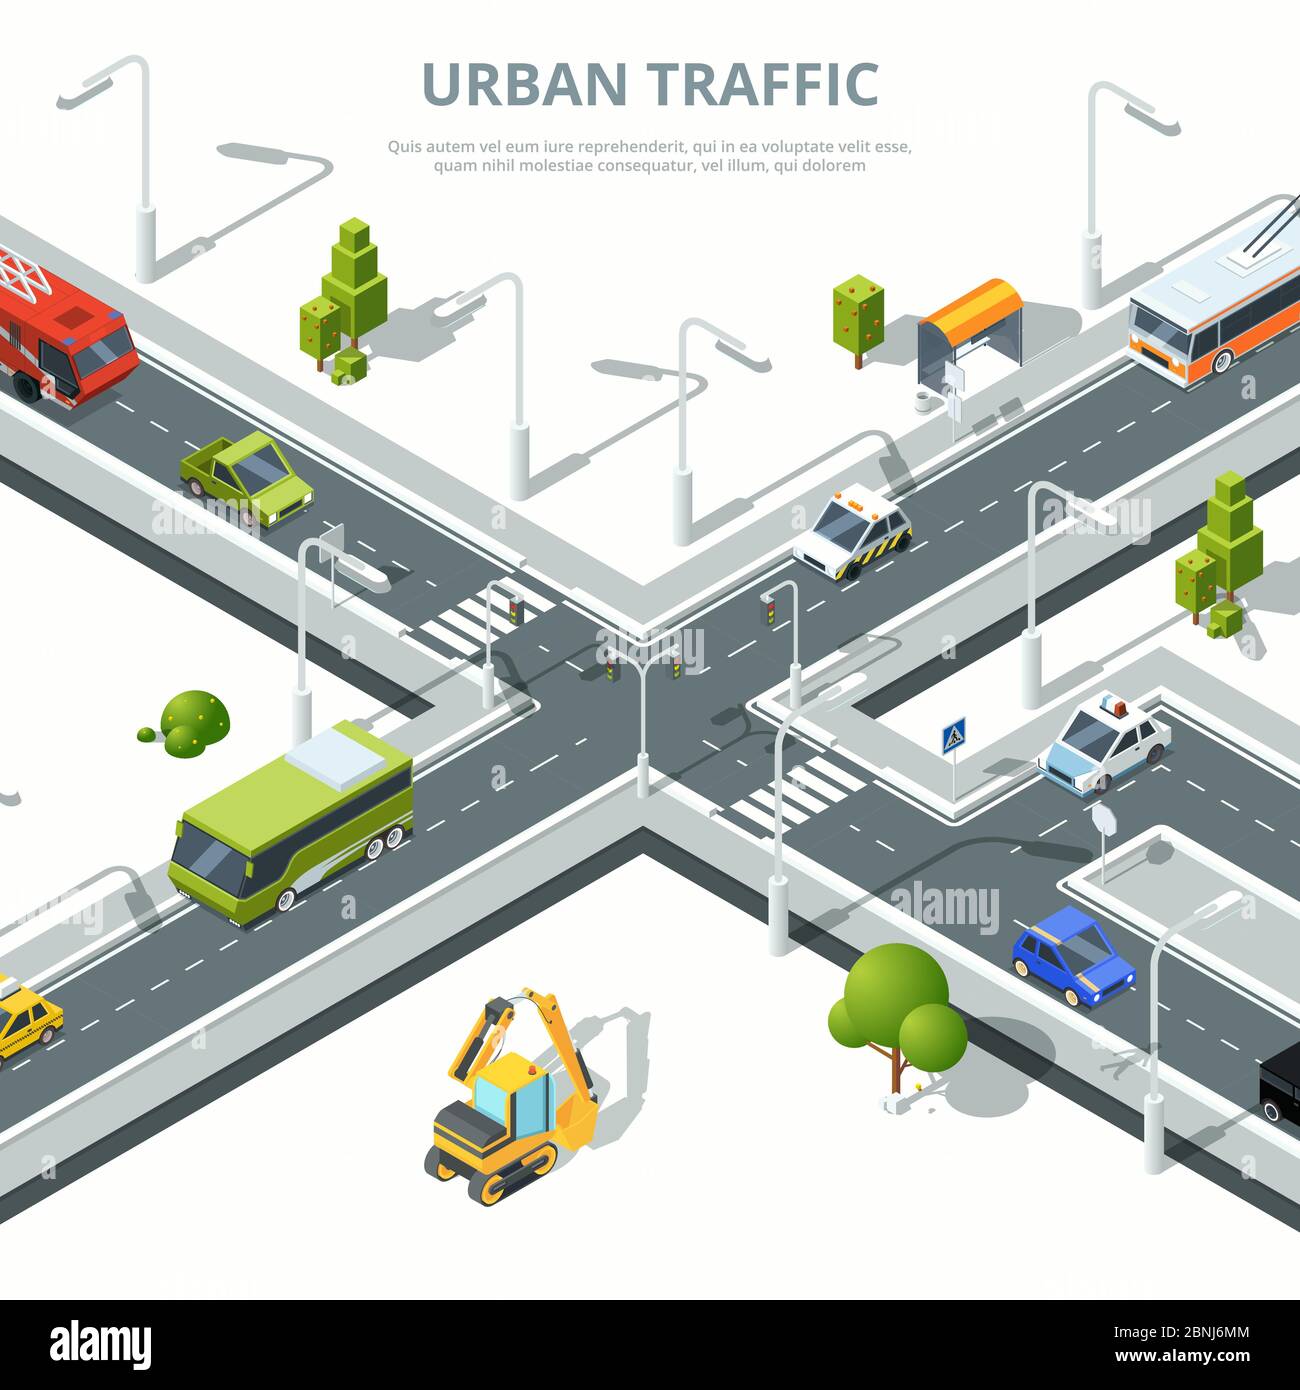 Carrefour urbain. Illustrations de la circulation urbaine avec différentes voitures. Images vectorielles isométriques Illustration de Vecteur